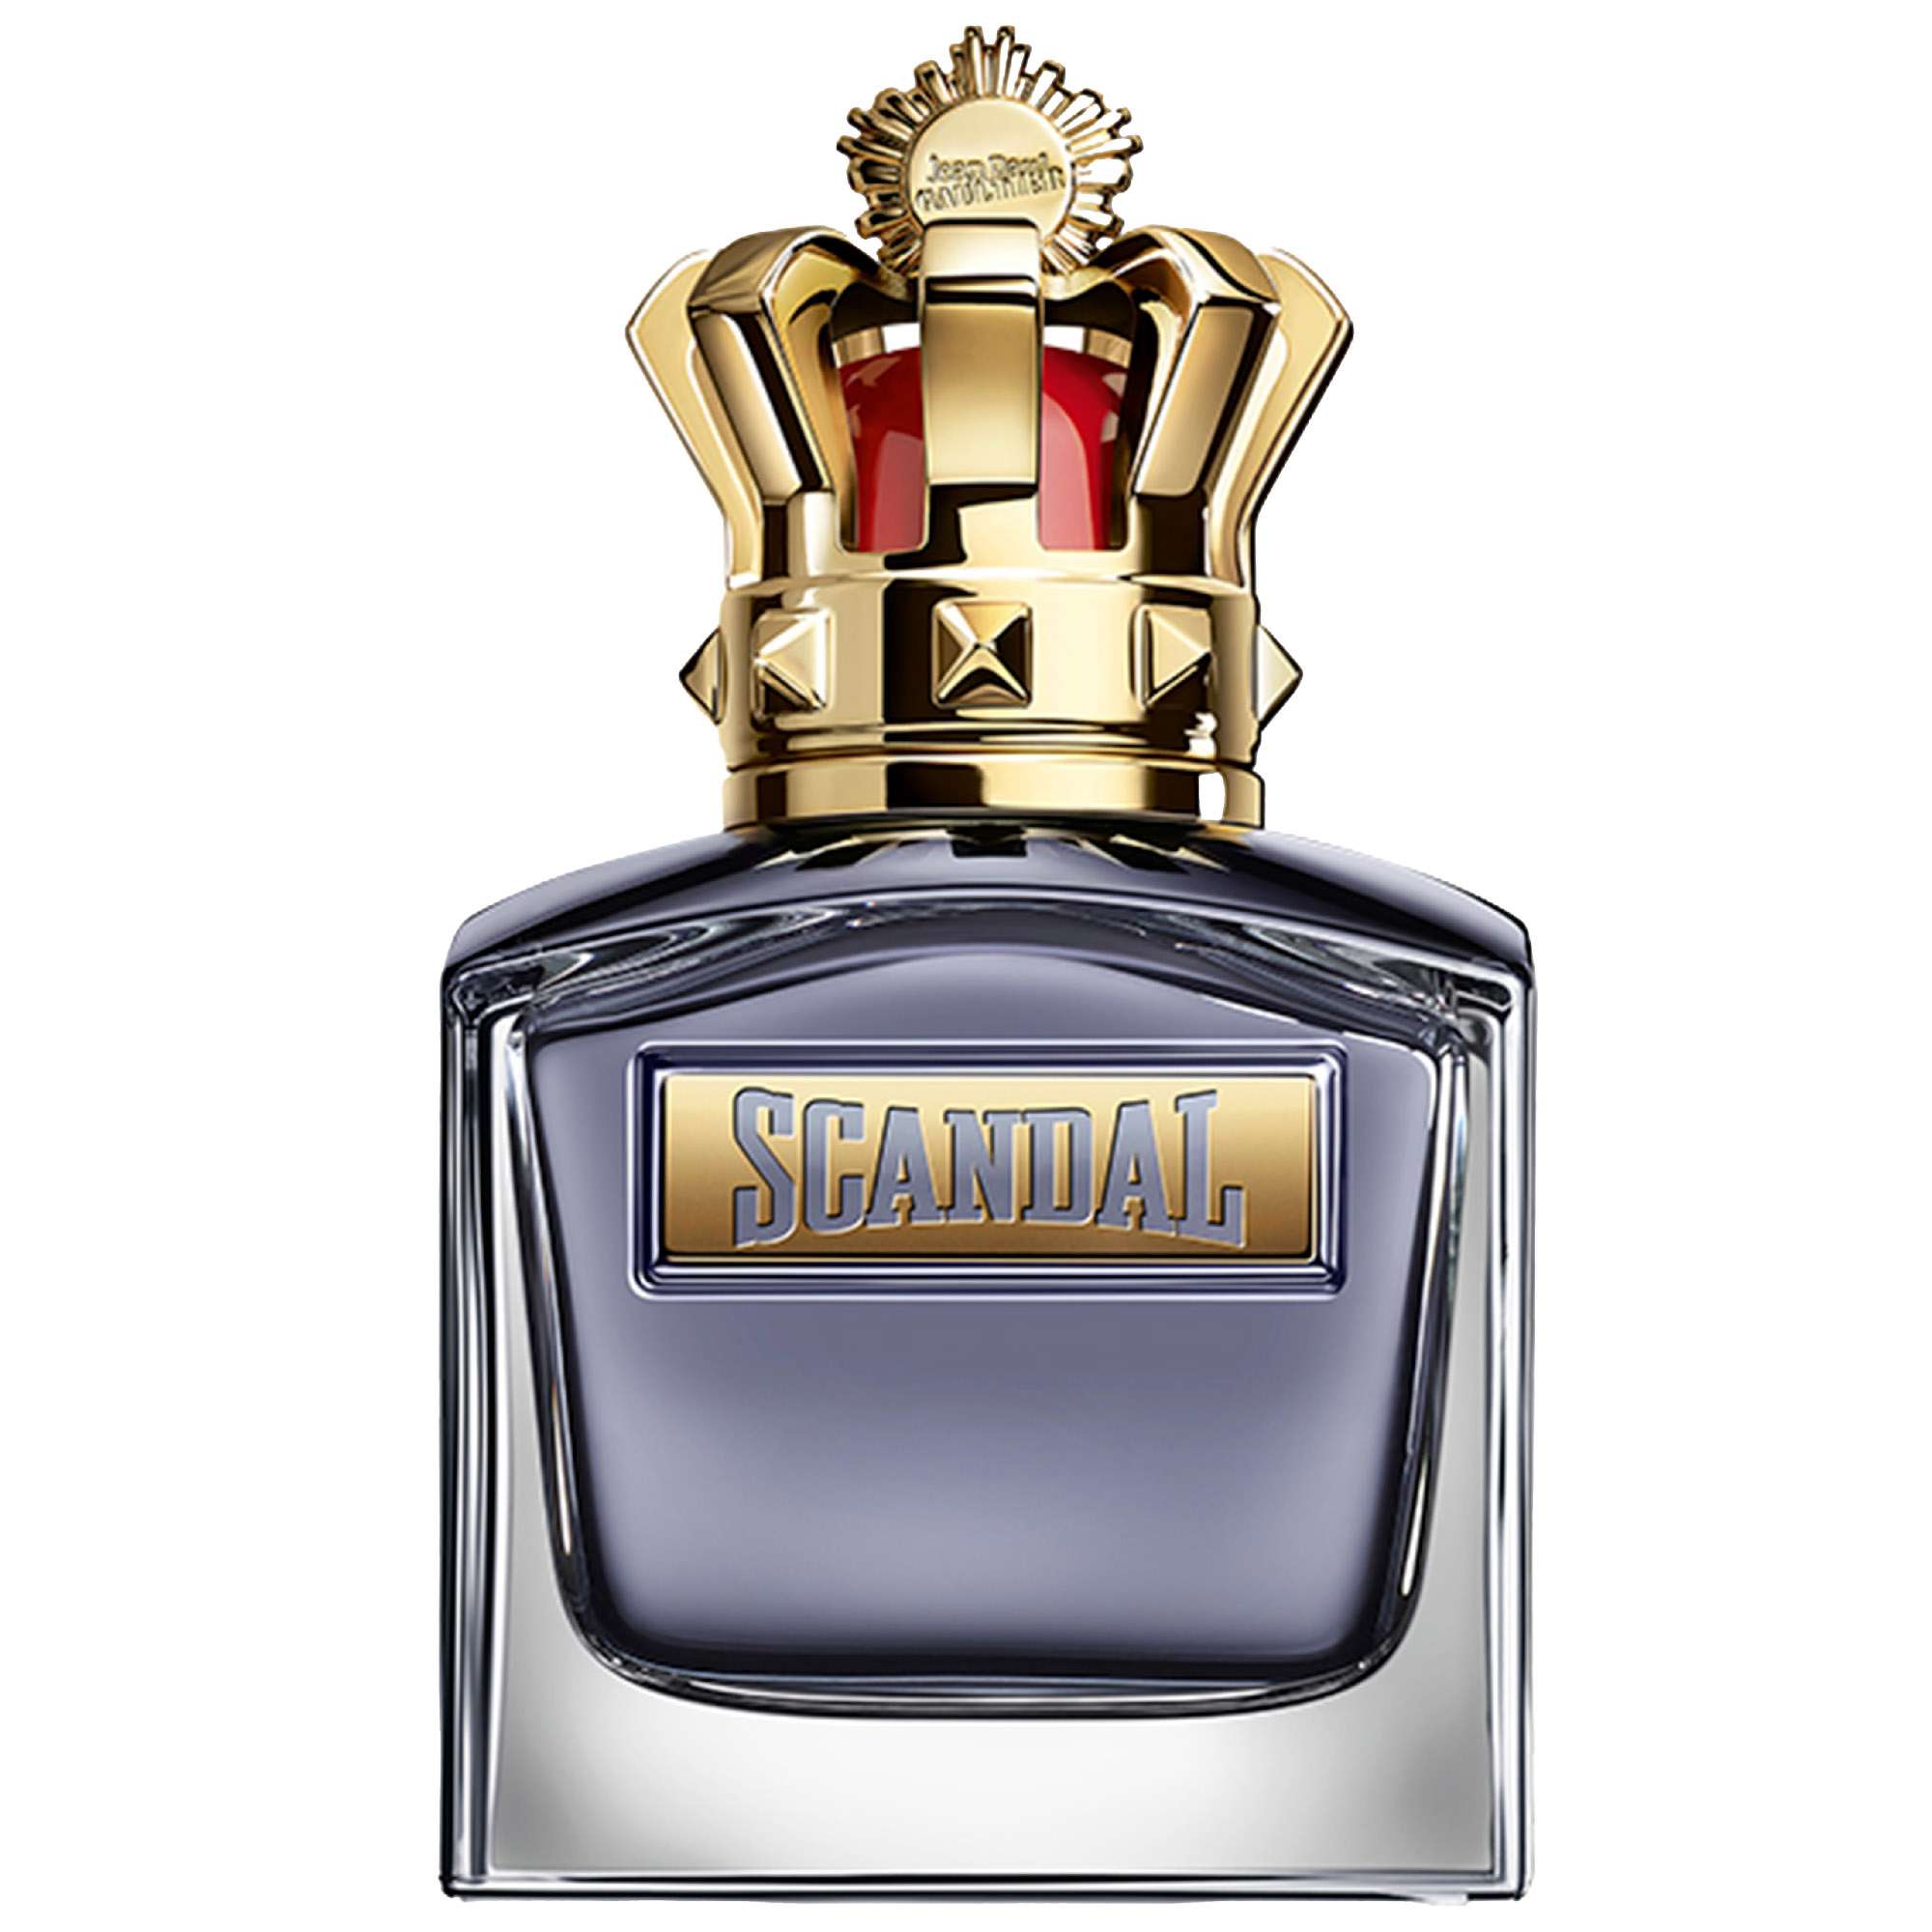 Photos - Women's Fragrance Jean Paul Gaultier Scandal Pour Homme Eau de Toilette 100ml 